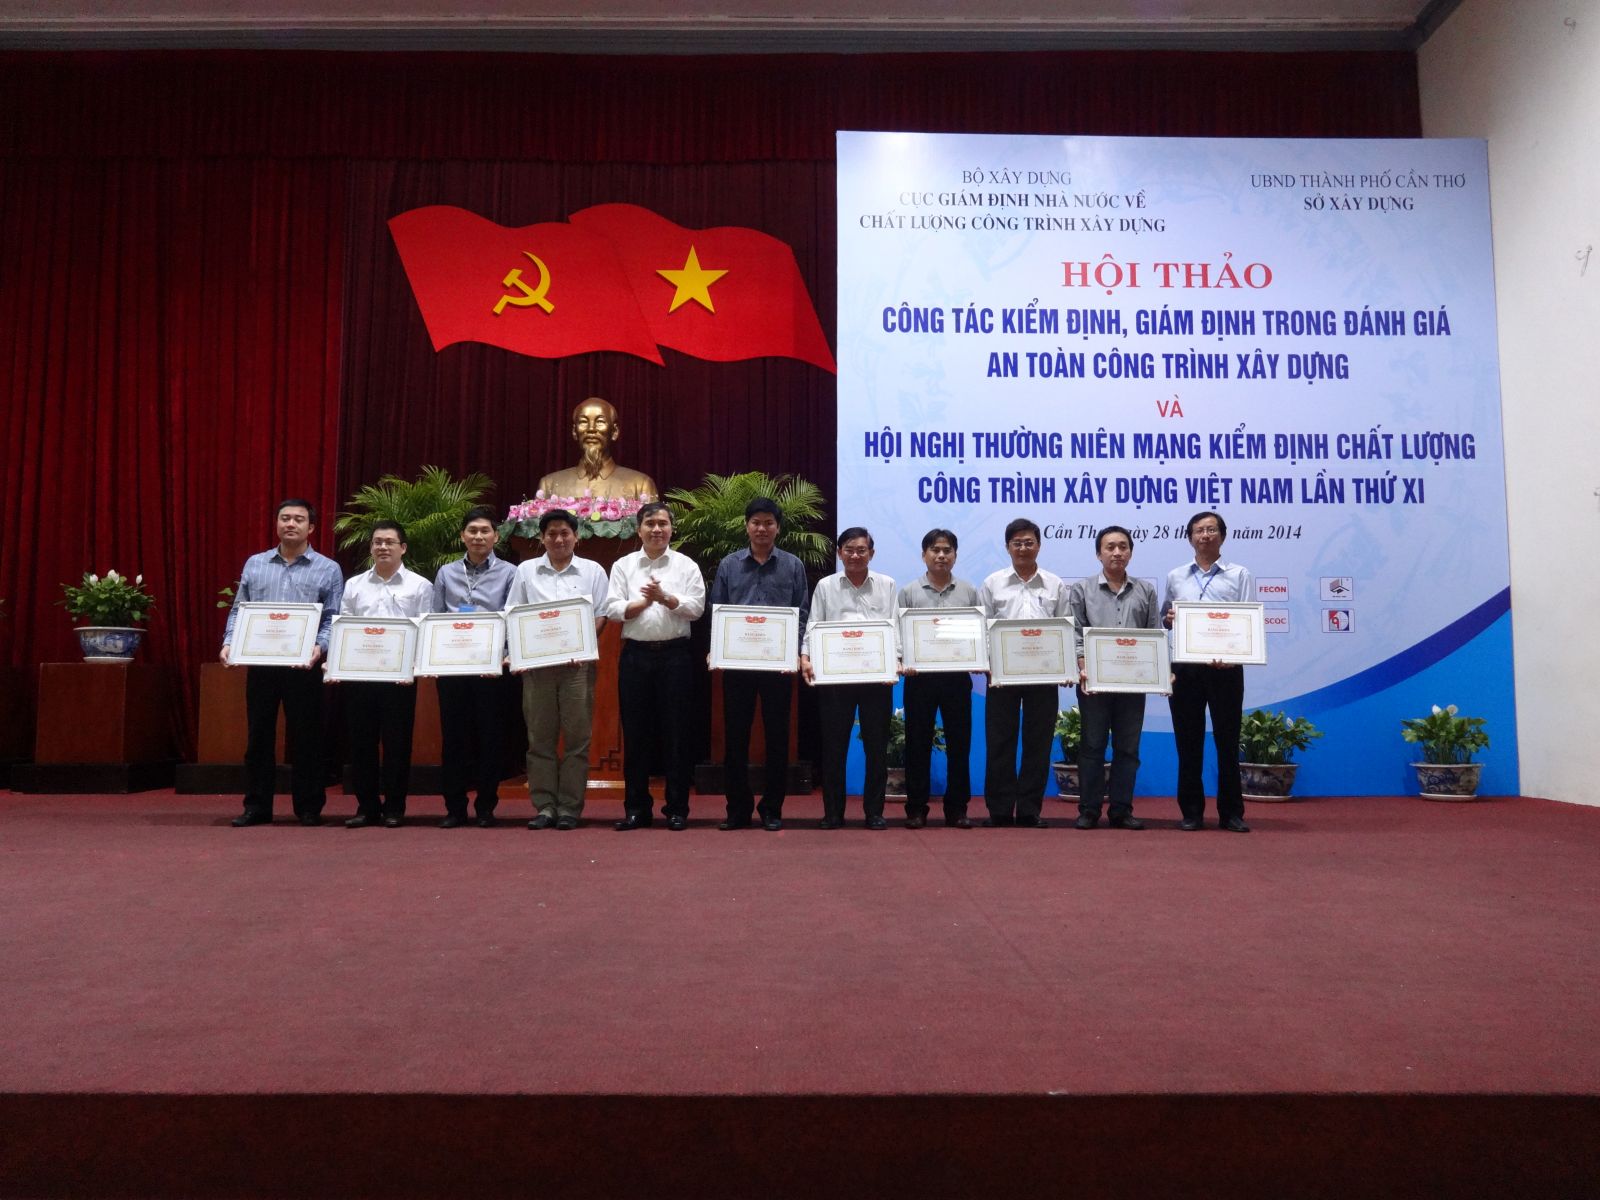 Ông Lê Quang Hùng - Cục trưởng Cục giám định Nhà nước về CLCTXD trao bằng khen của Bộ trưởng Bộ XD cho các đơn vị, cá nhân có thành tích xuất sắc trong hoạt động Mạng Kiểm định năm 2013